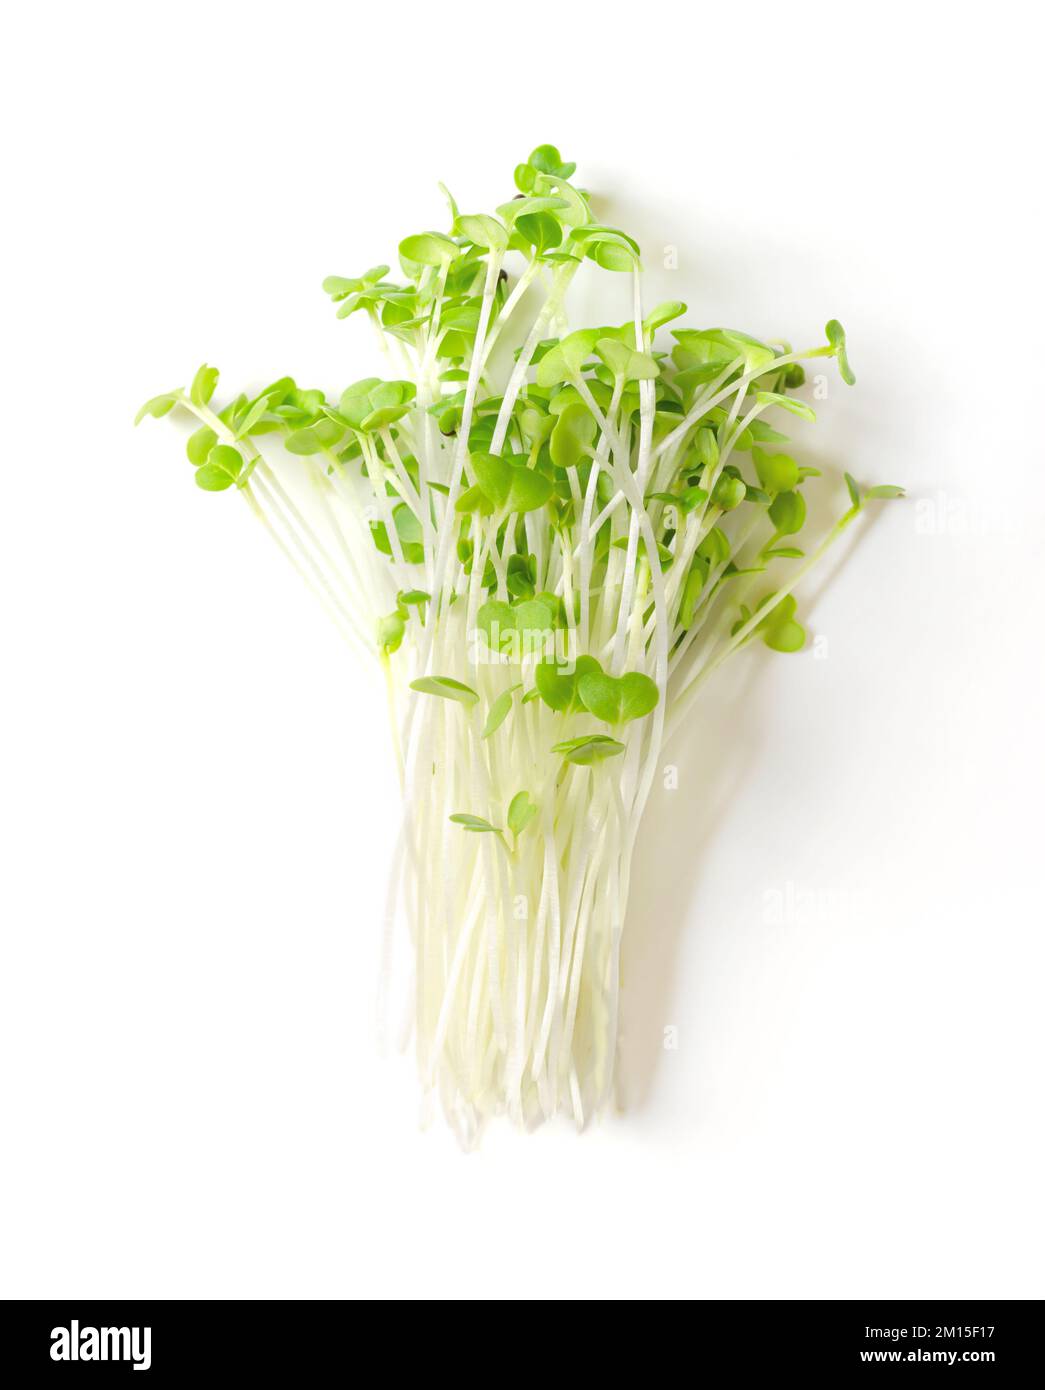 Ein Haufen mizuna Microgreens. Frische, verzehrfertige Setzlinge, Triebe, Kohlköpfe und junge Pflanzen von Brassica juncea, auch bekannt als japanischer Senfgrün. Stockfoto